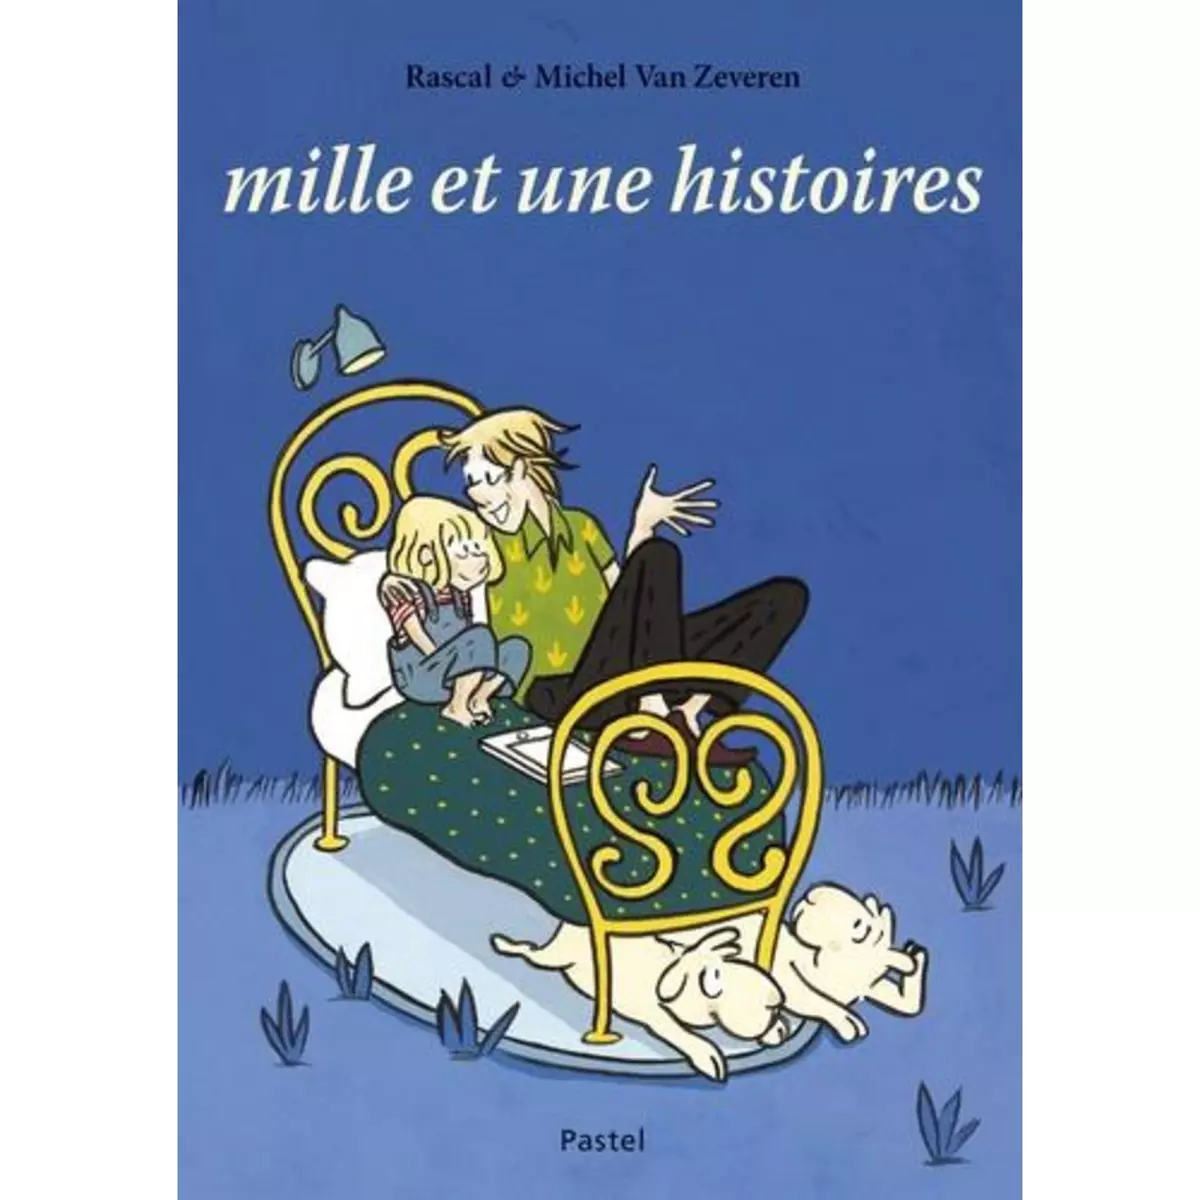  MILLE ET UNE HISTOIRES, Van Zeveren Michel